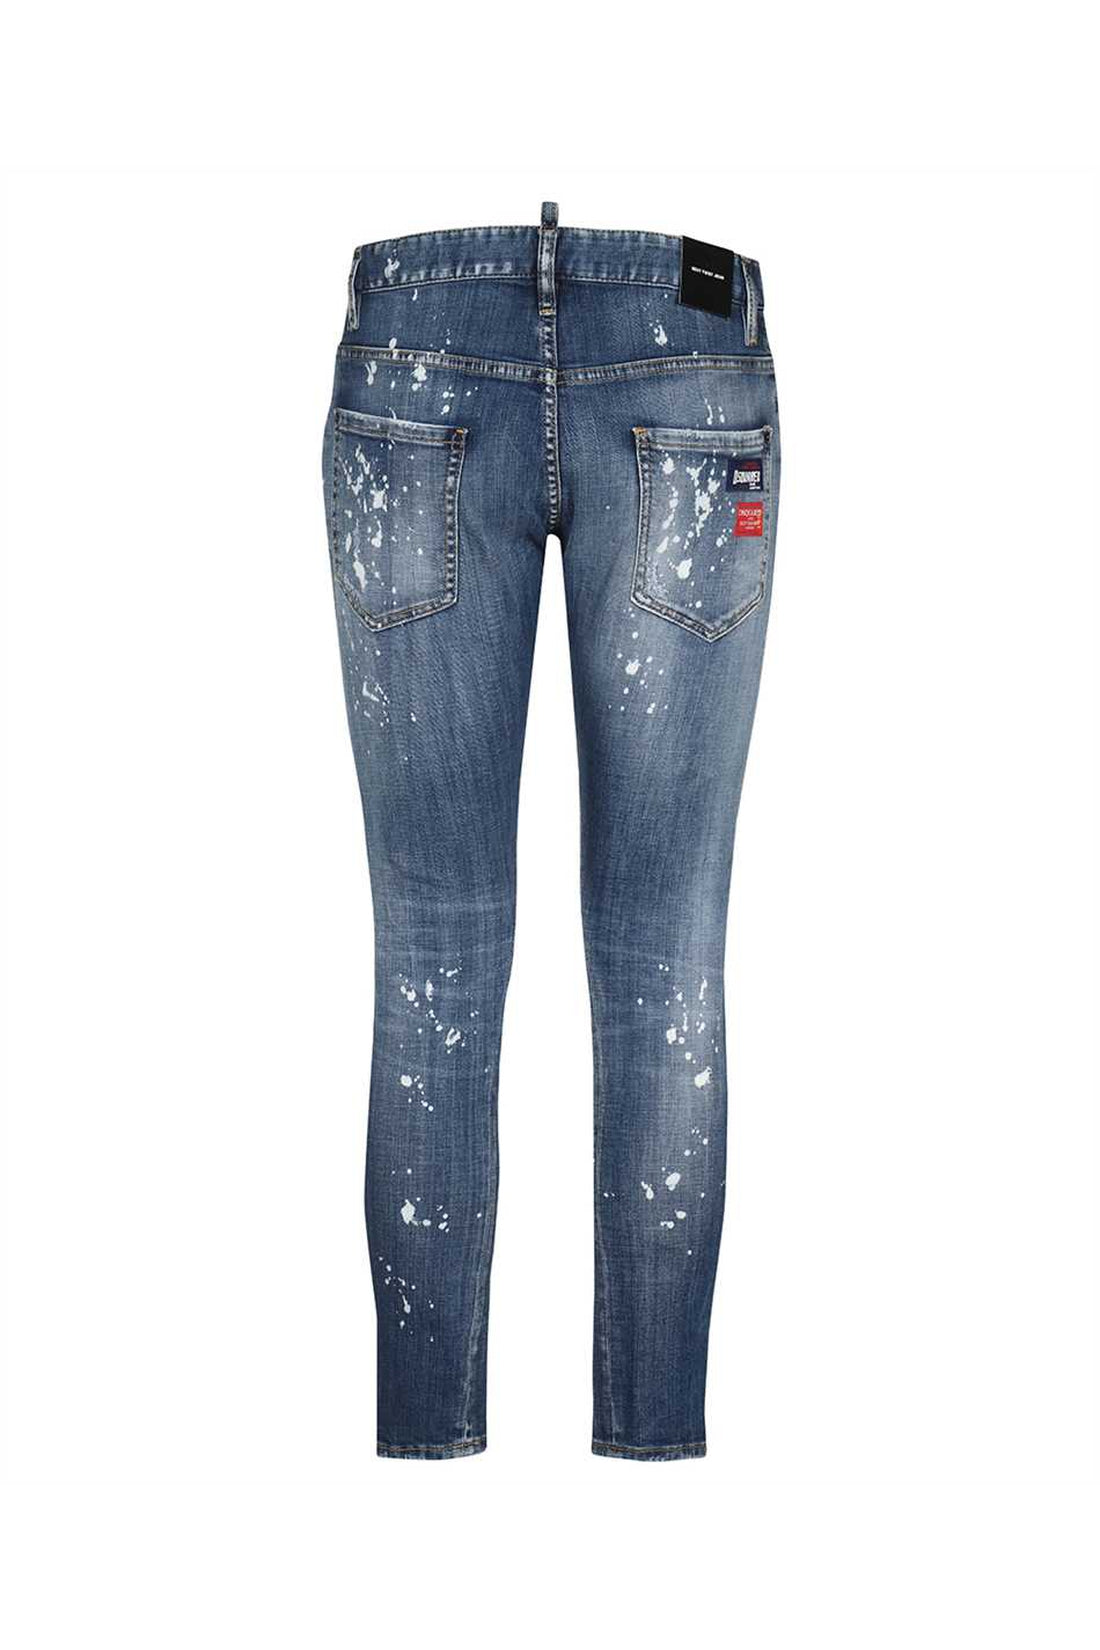 Dsquared2-OUTLET-SALE-Sexy Twist jeans-ARCHIVIST